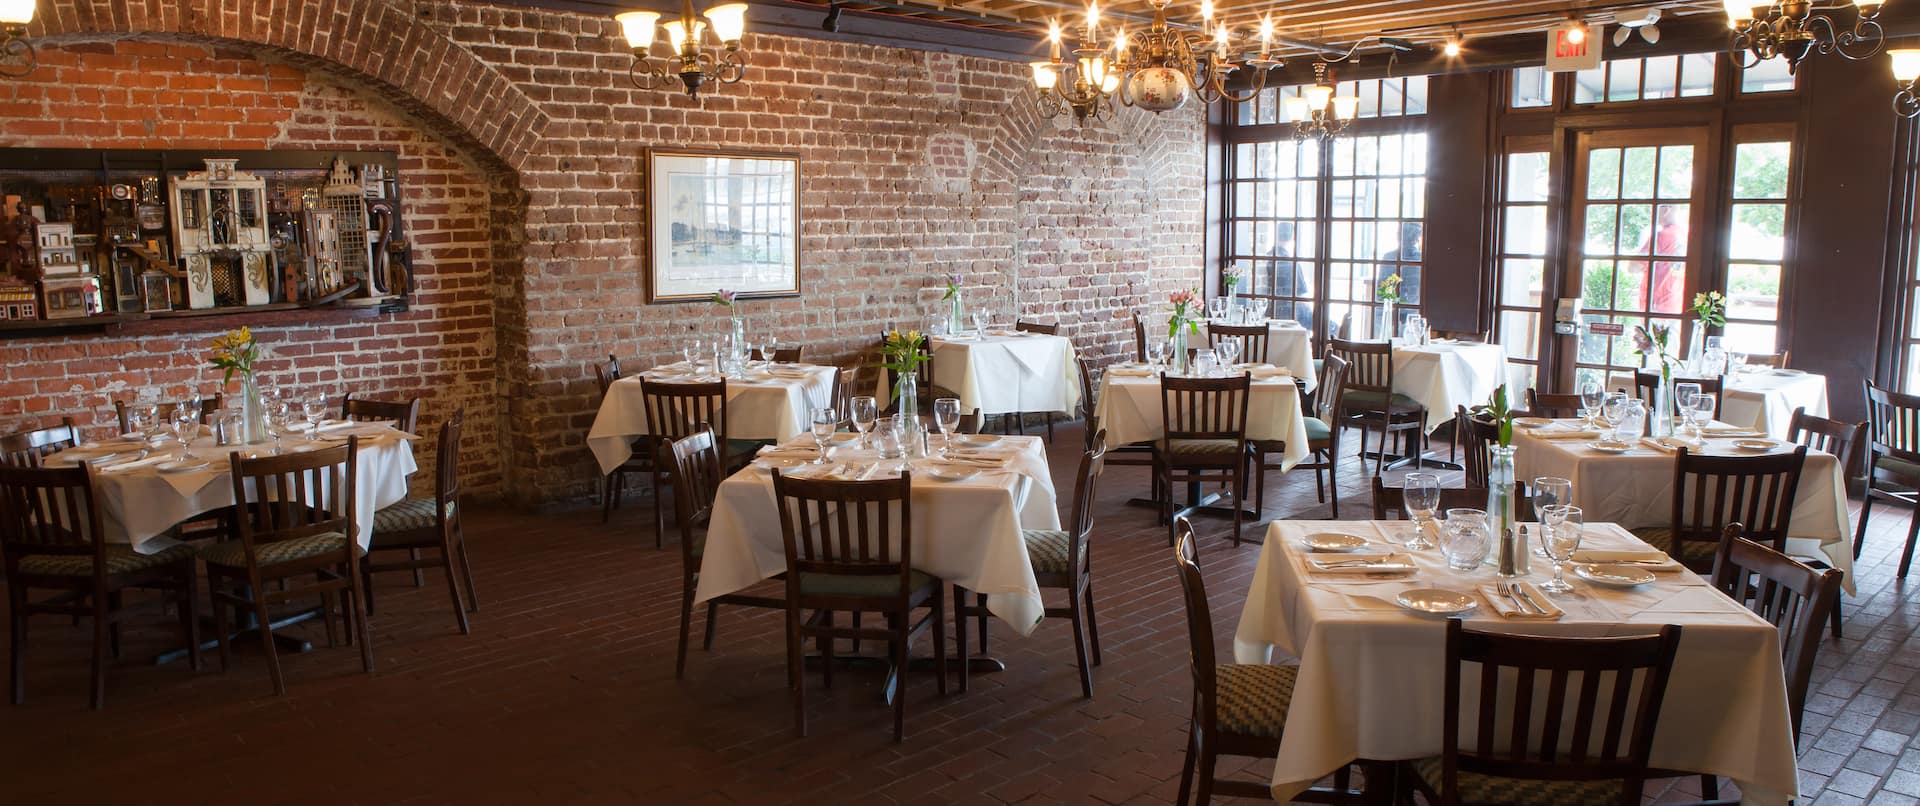 Restaurant "Riverhouse Savannah" – Essbereich